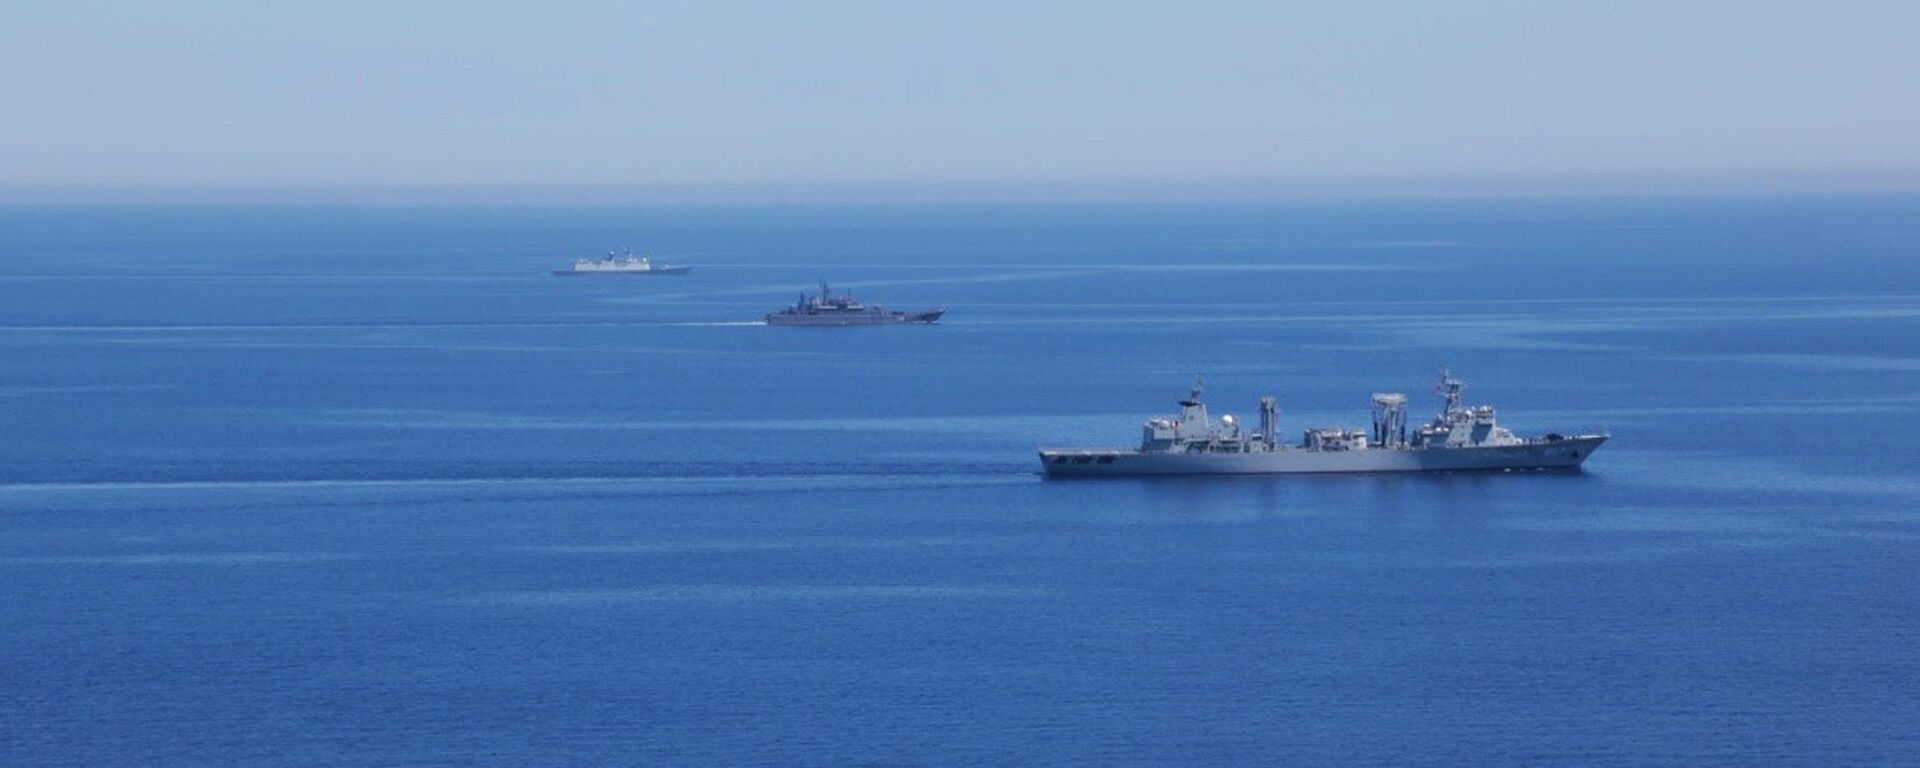 Các tàu của Hải quân Nga và Trung Quốc trong cuộc tập trận chung mang tên “Hợp tác trên biển -2015” ở Địa Trung Hải. - Sputnik Việt Nam, 1920, 08.02.2021